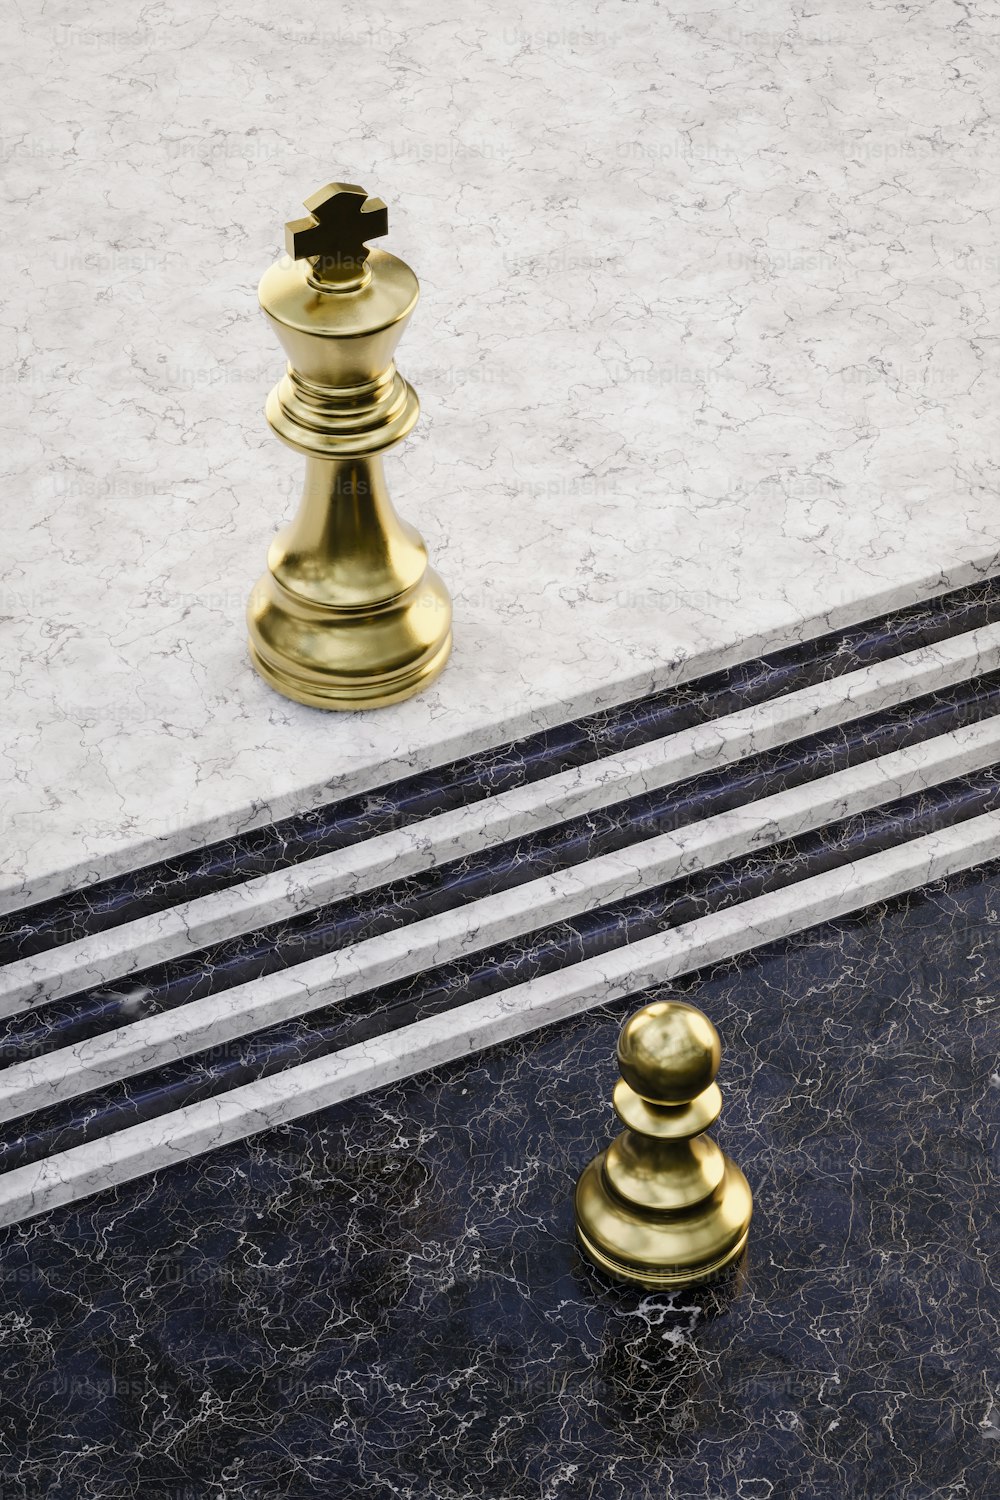 대리석 바닥 위에 놓인 황금 체스 말